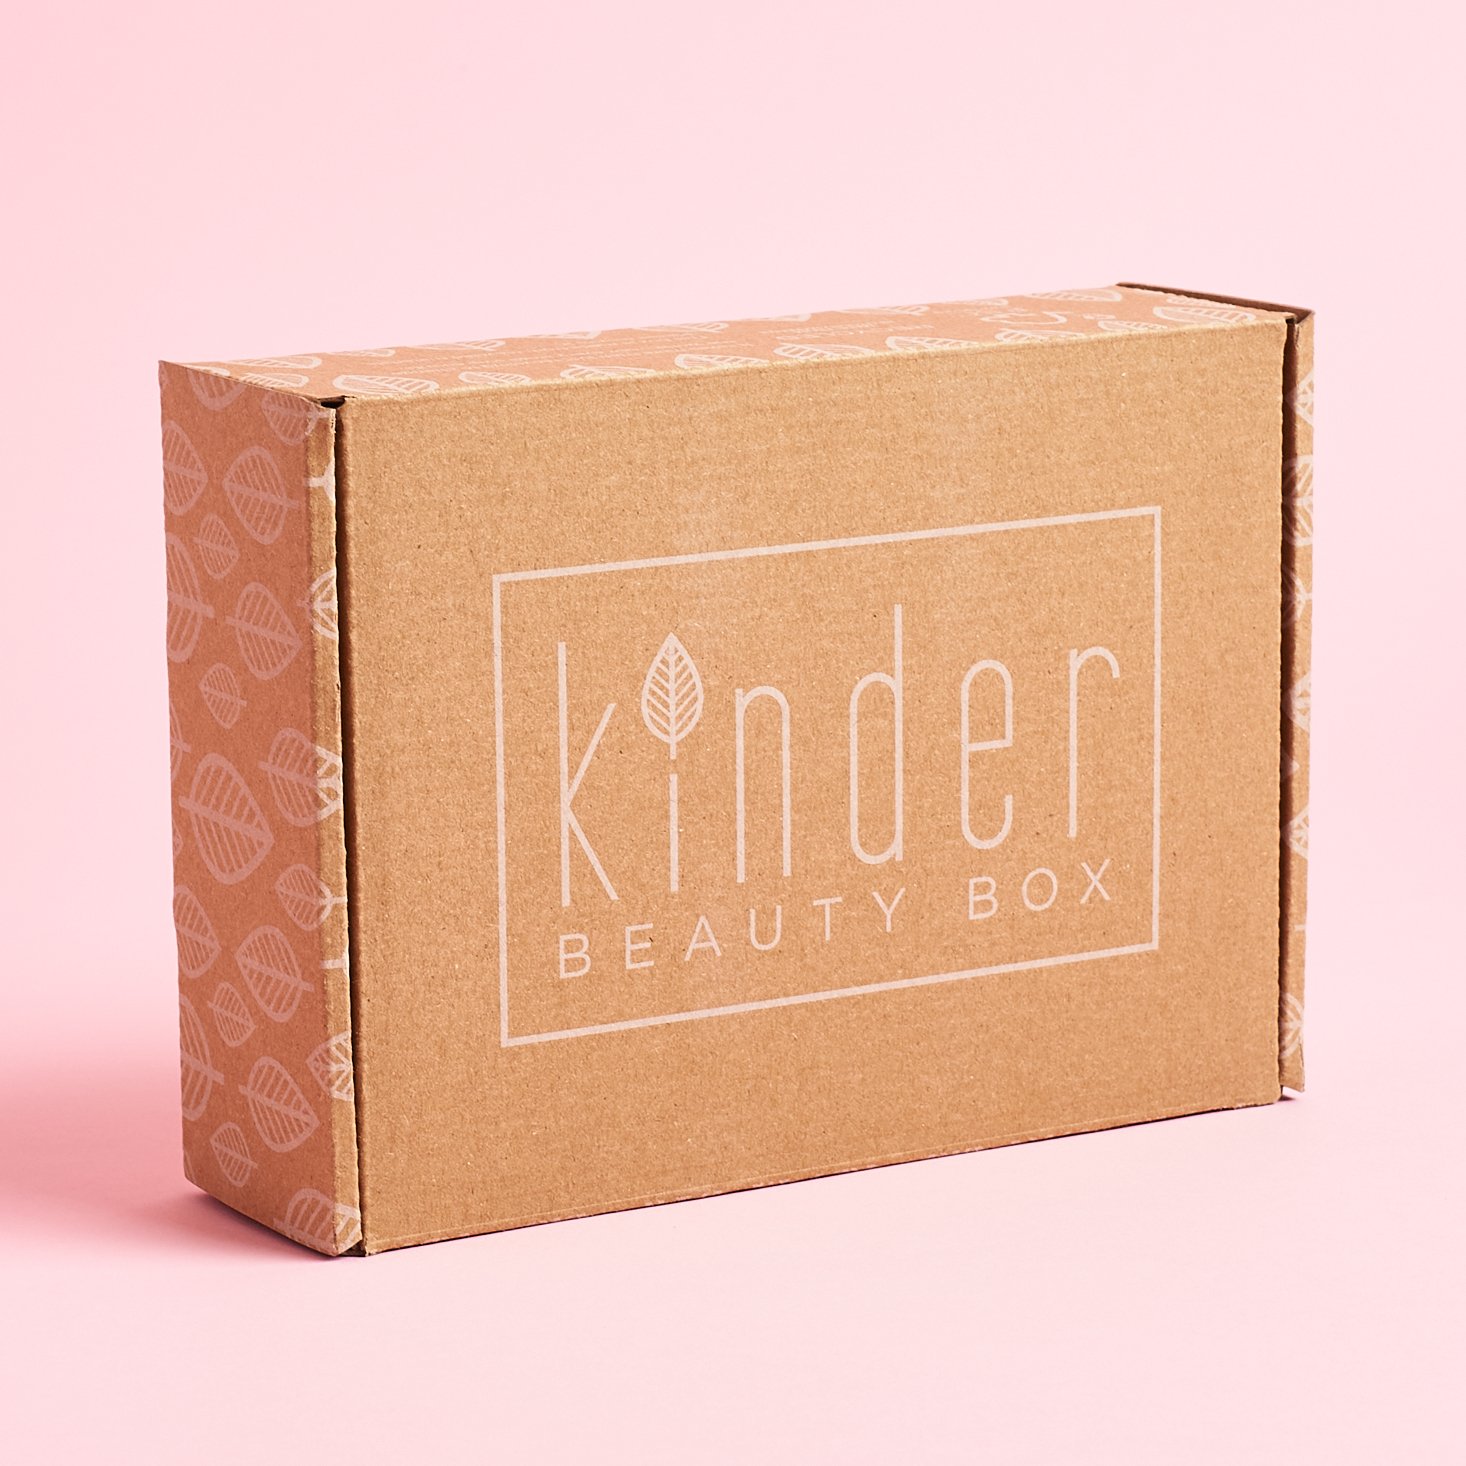 Kinder Beauty Box Review - Is It Worth It? - GenTwenty